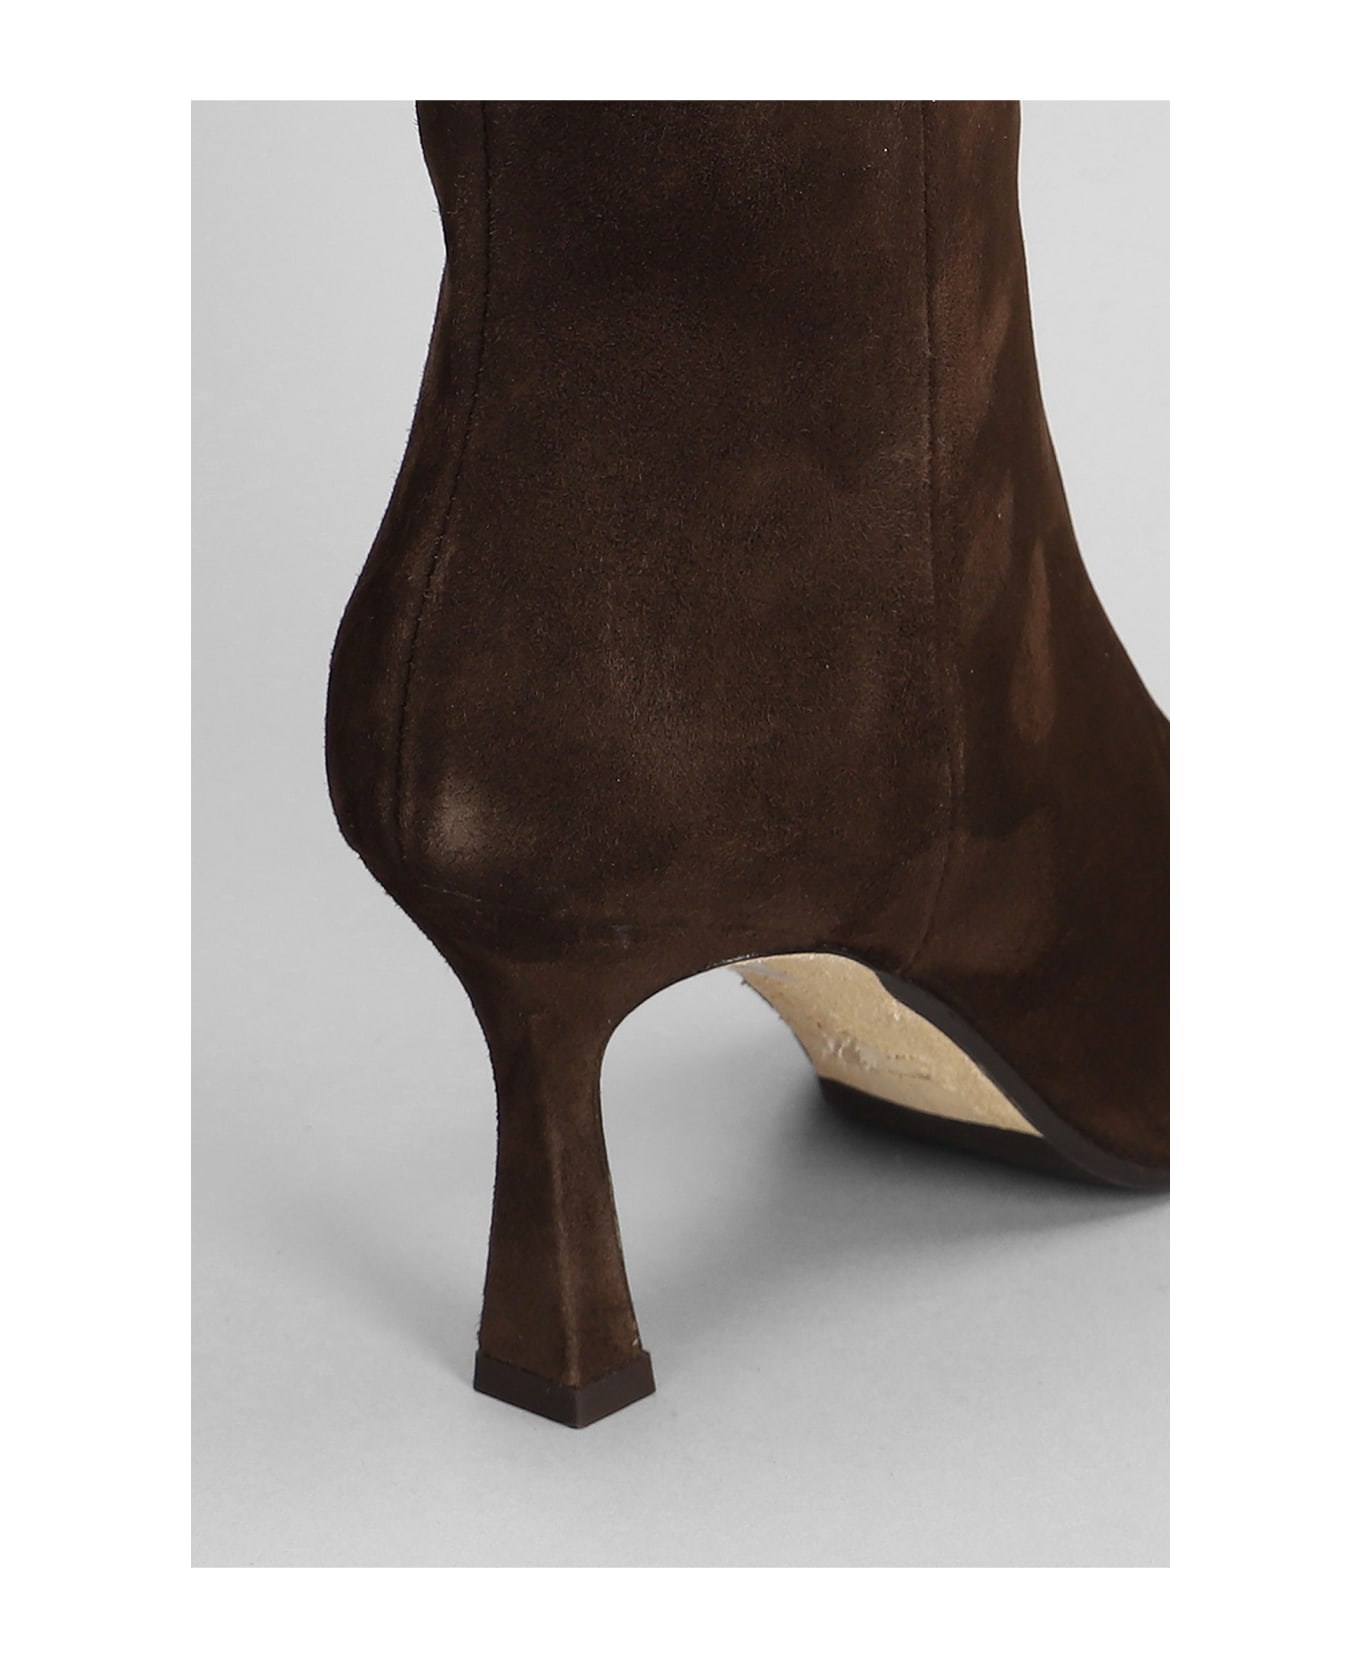 The Seller High Heels Ankle Boots In Dark Brown Suede - dark brown